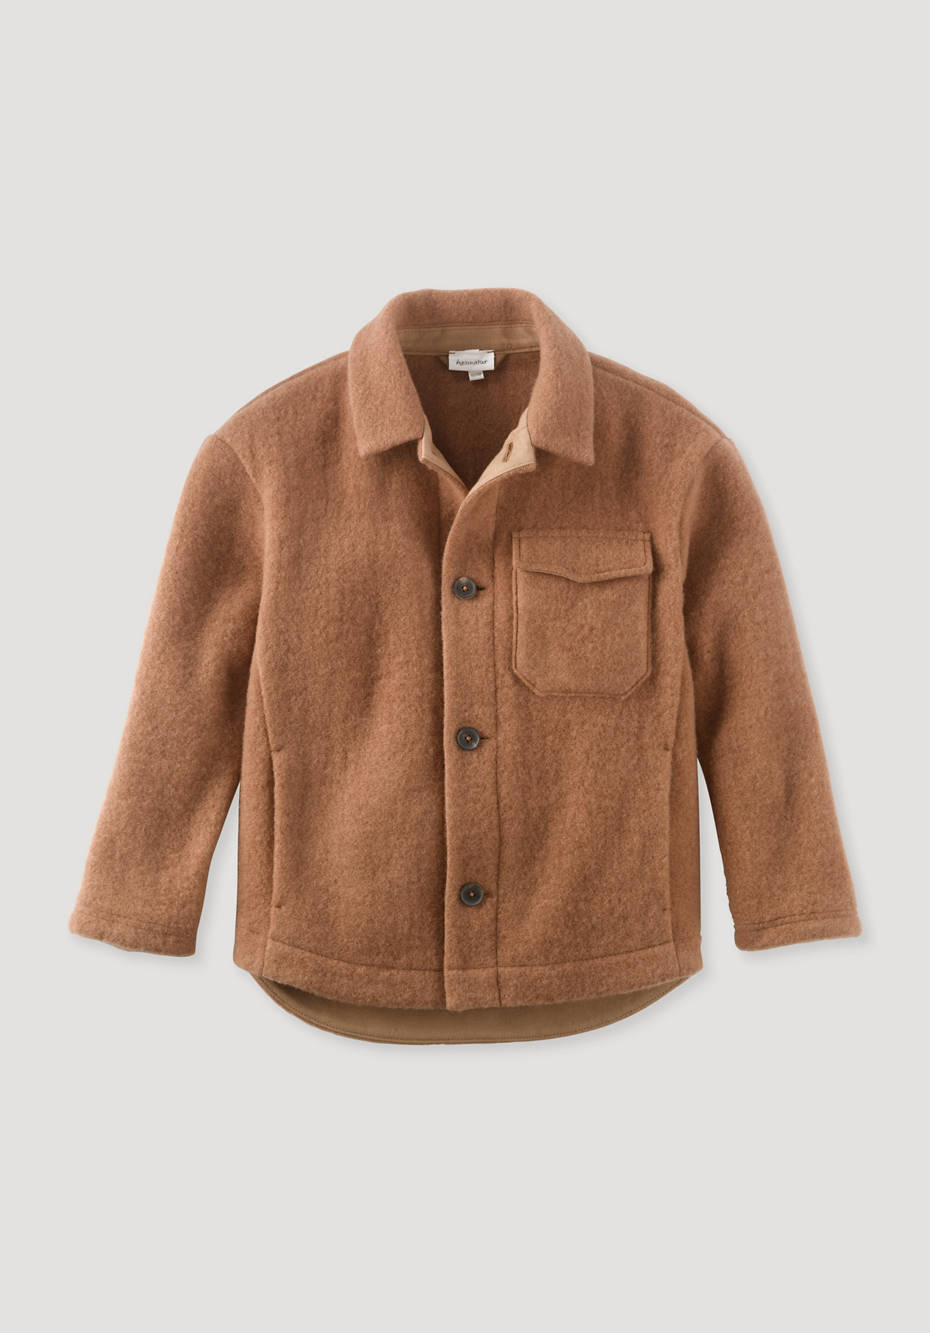 Wool fleece overshirt made from pure organic merino wool